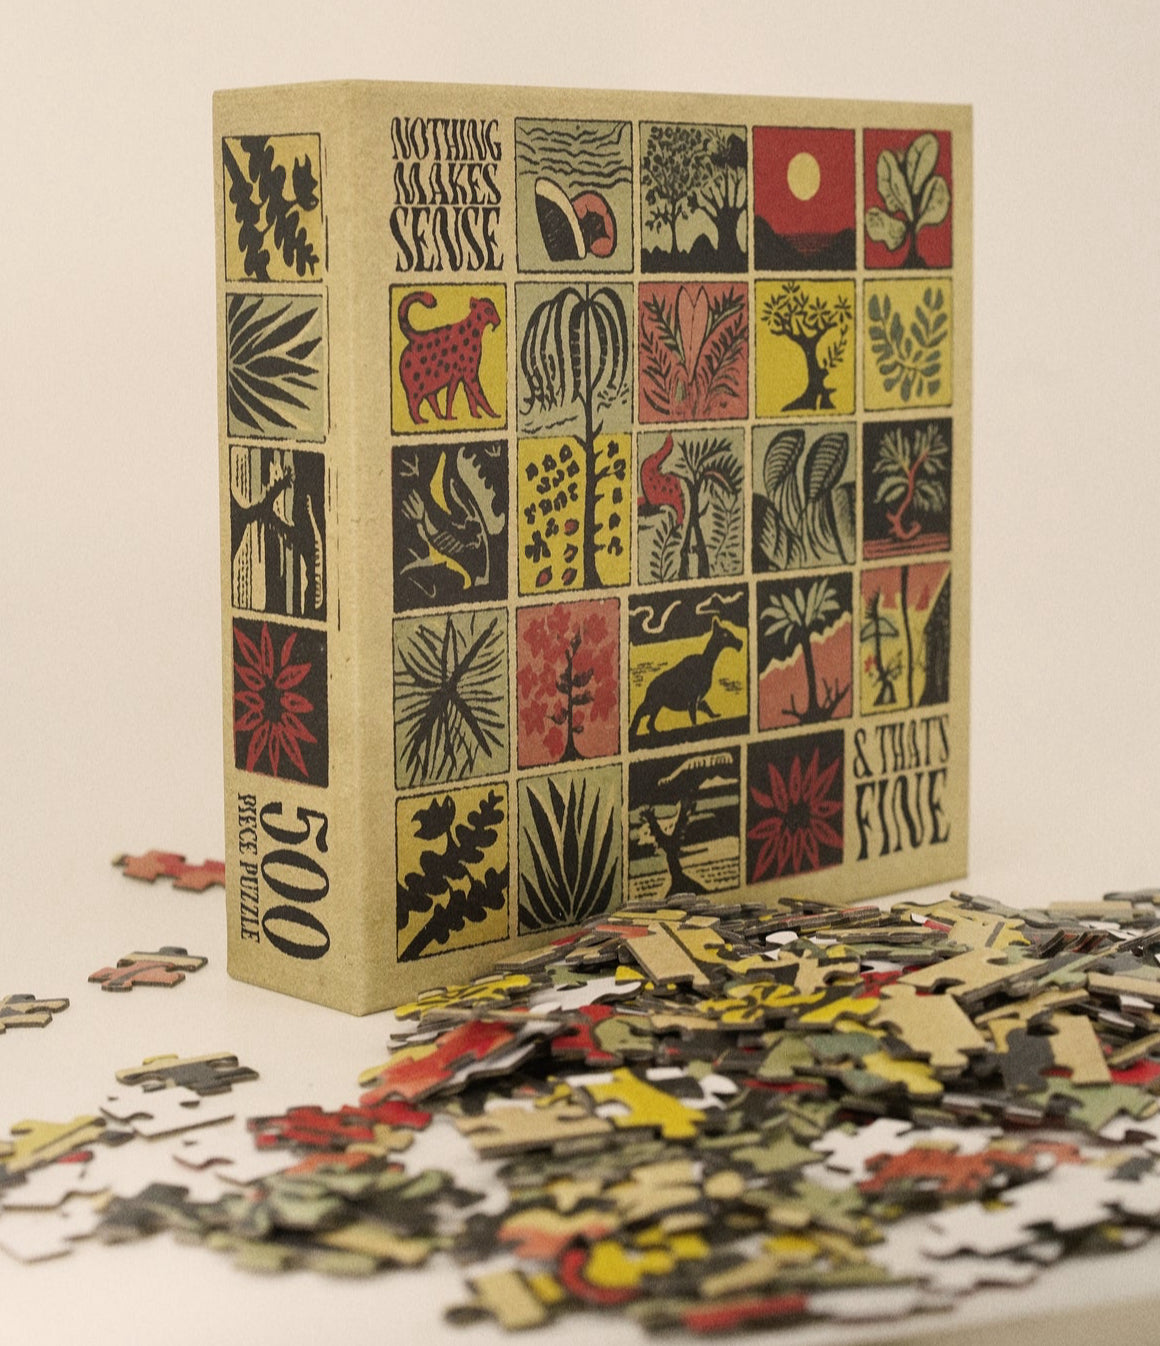 ‘Nothing Makes Sense’ Jigsaw Puzzle